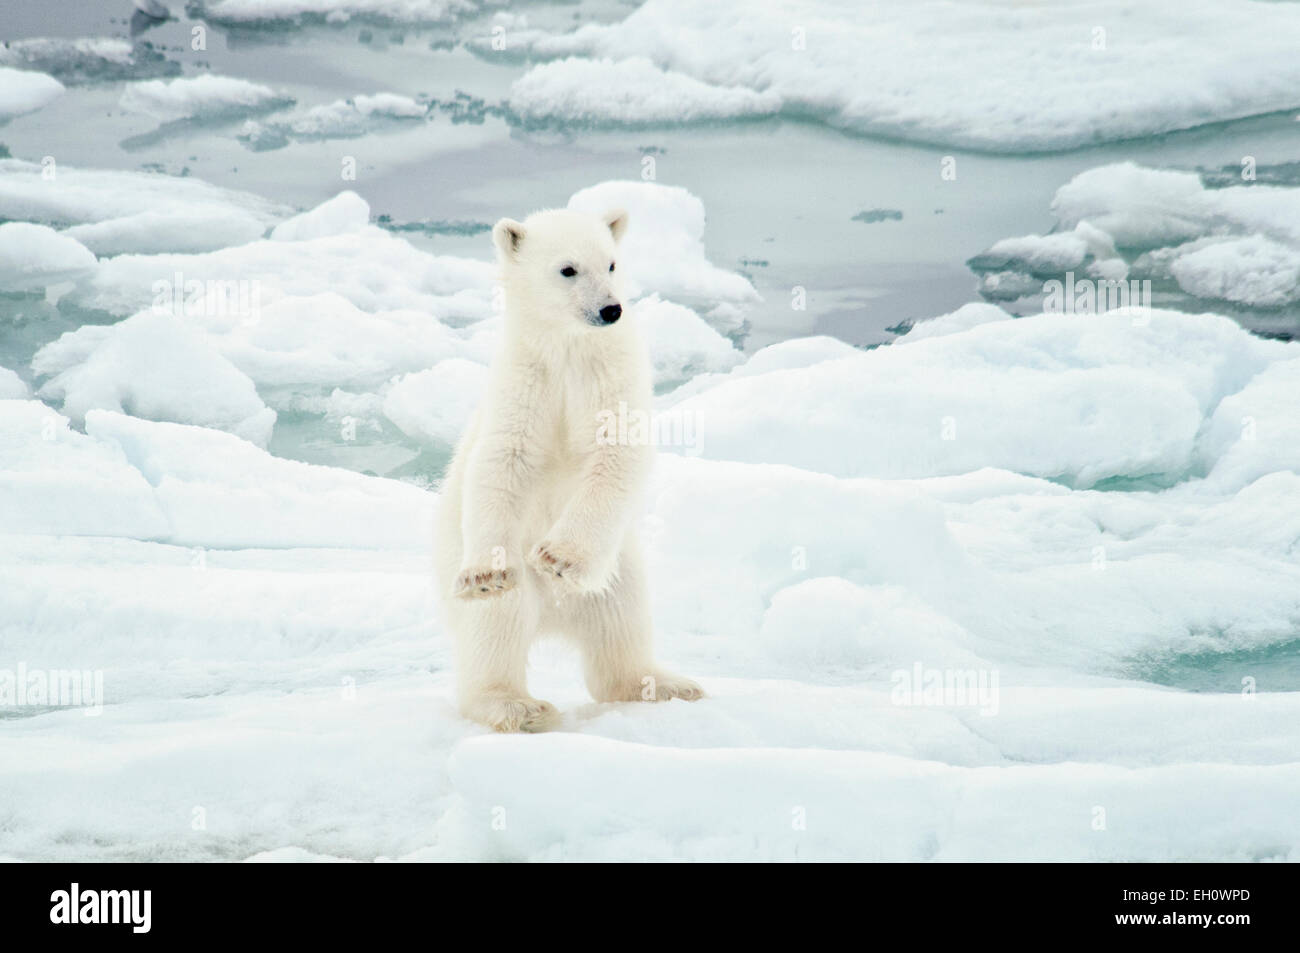 Carino Polar Bear Cub, Ursus maritimus, alzarsi e apparente di danza sulla Olgastretet Pack ghiaccio, arcipelago delle Svalbard, Norvegia Foto Stock